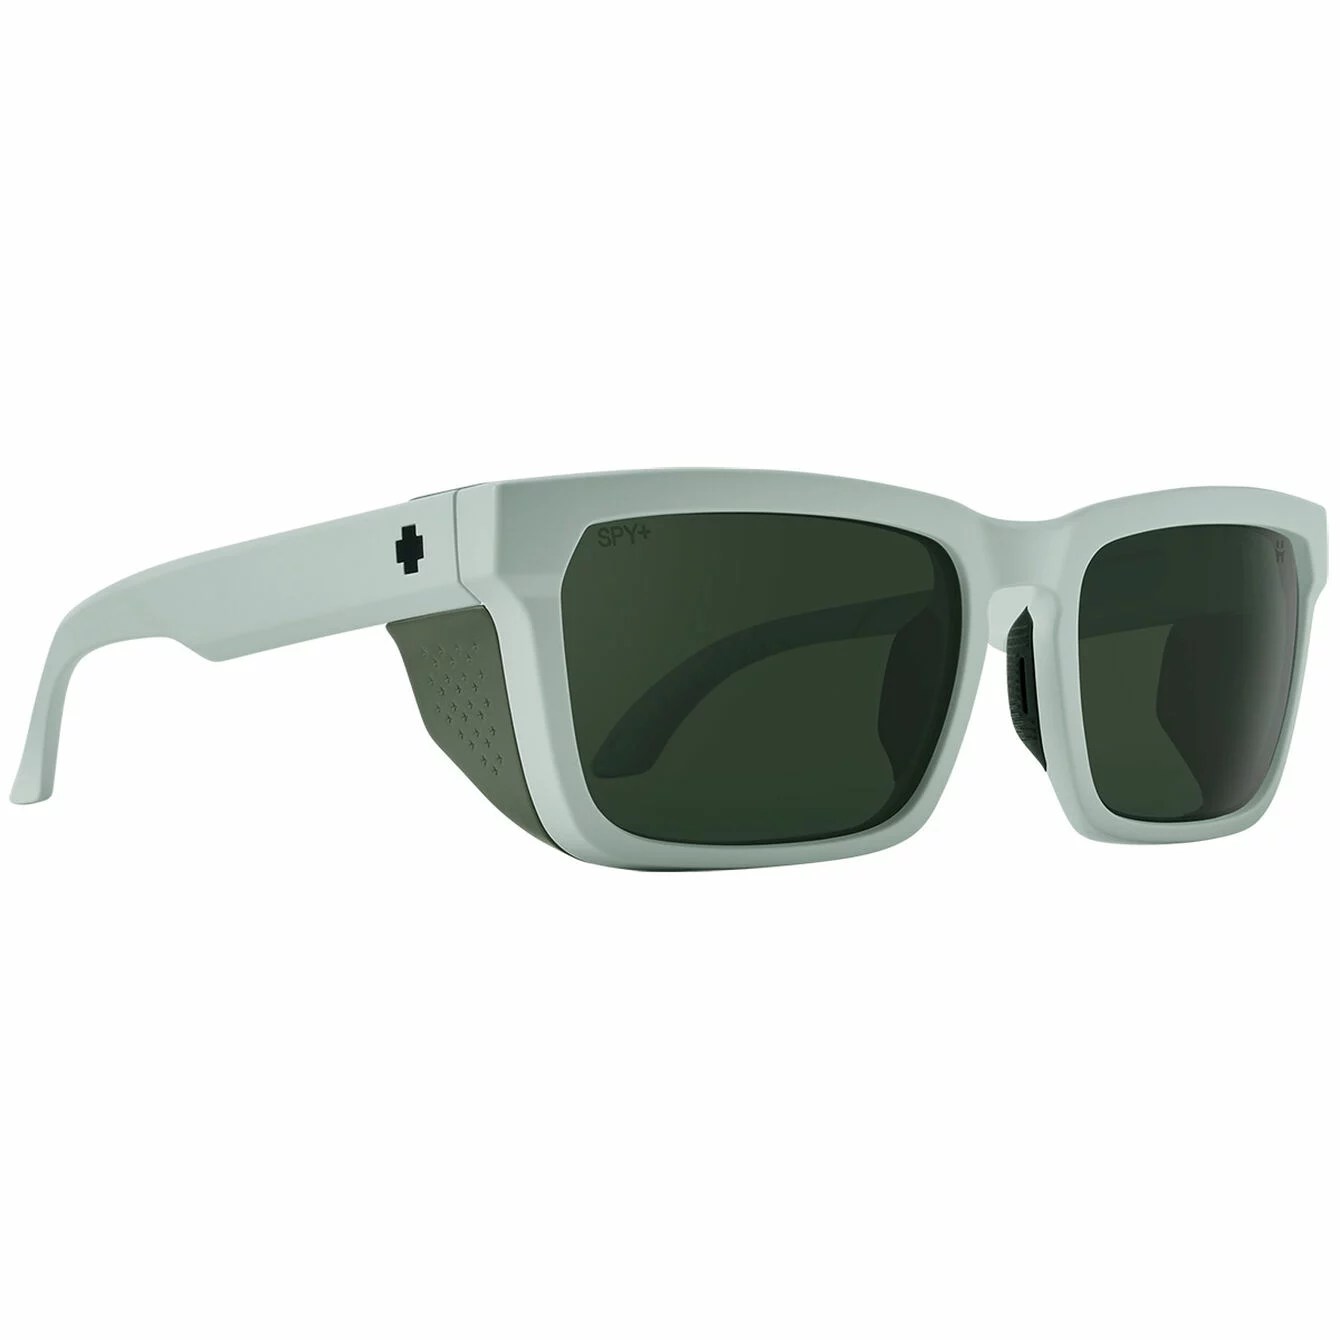 Spy+ Helm Tech Sunglasses, sunglasses for tennis